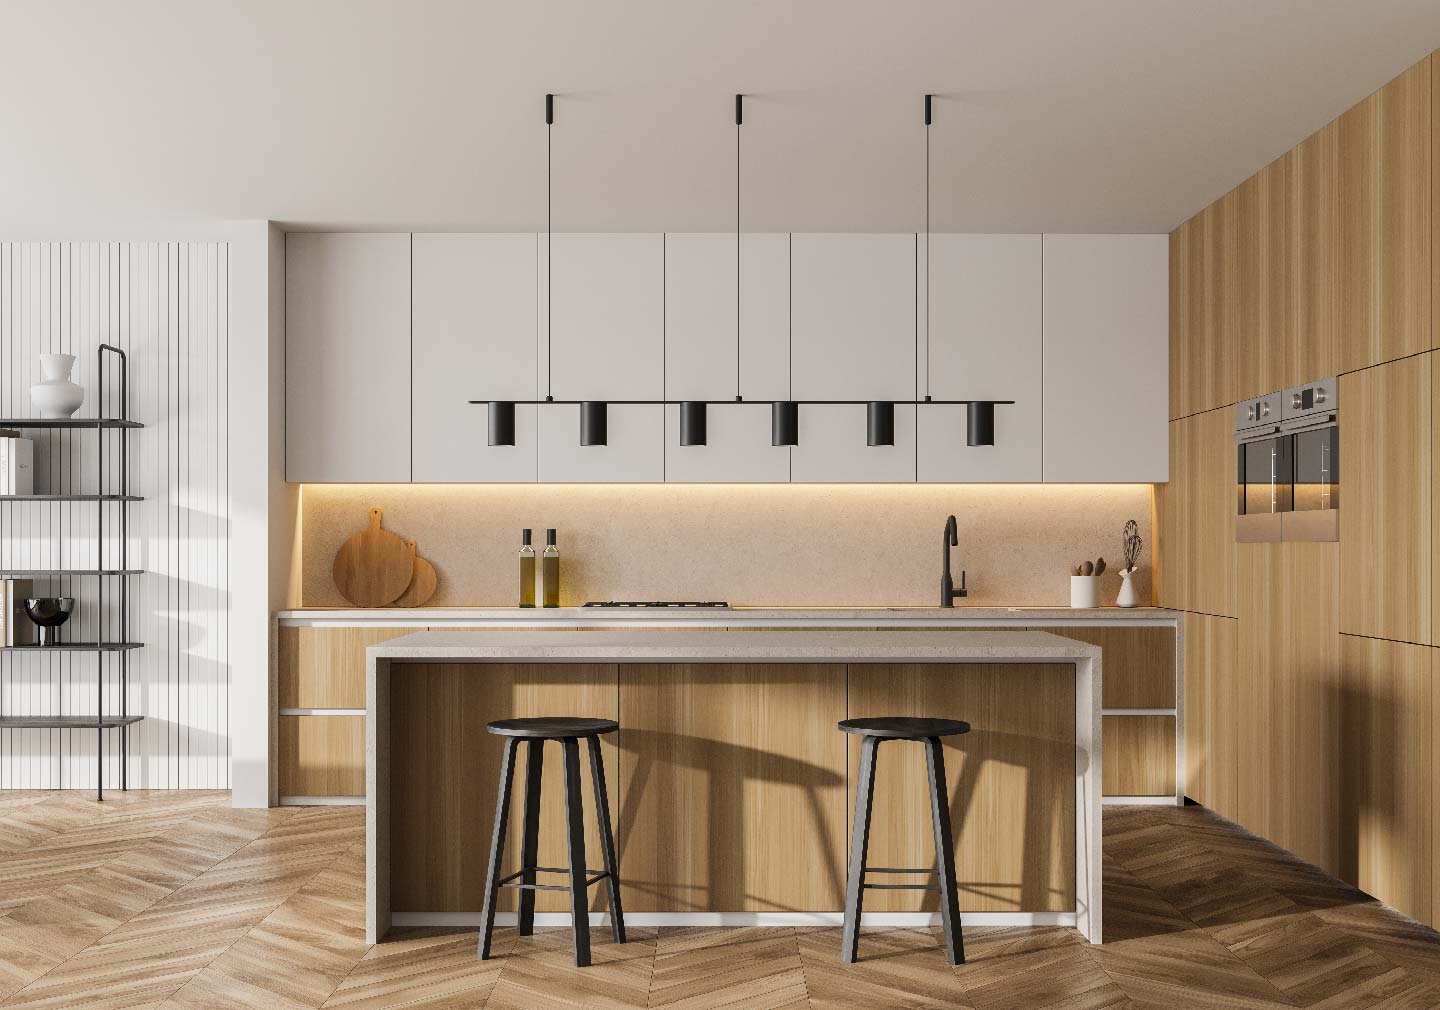 minimalist interior design - island kitchen